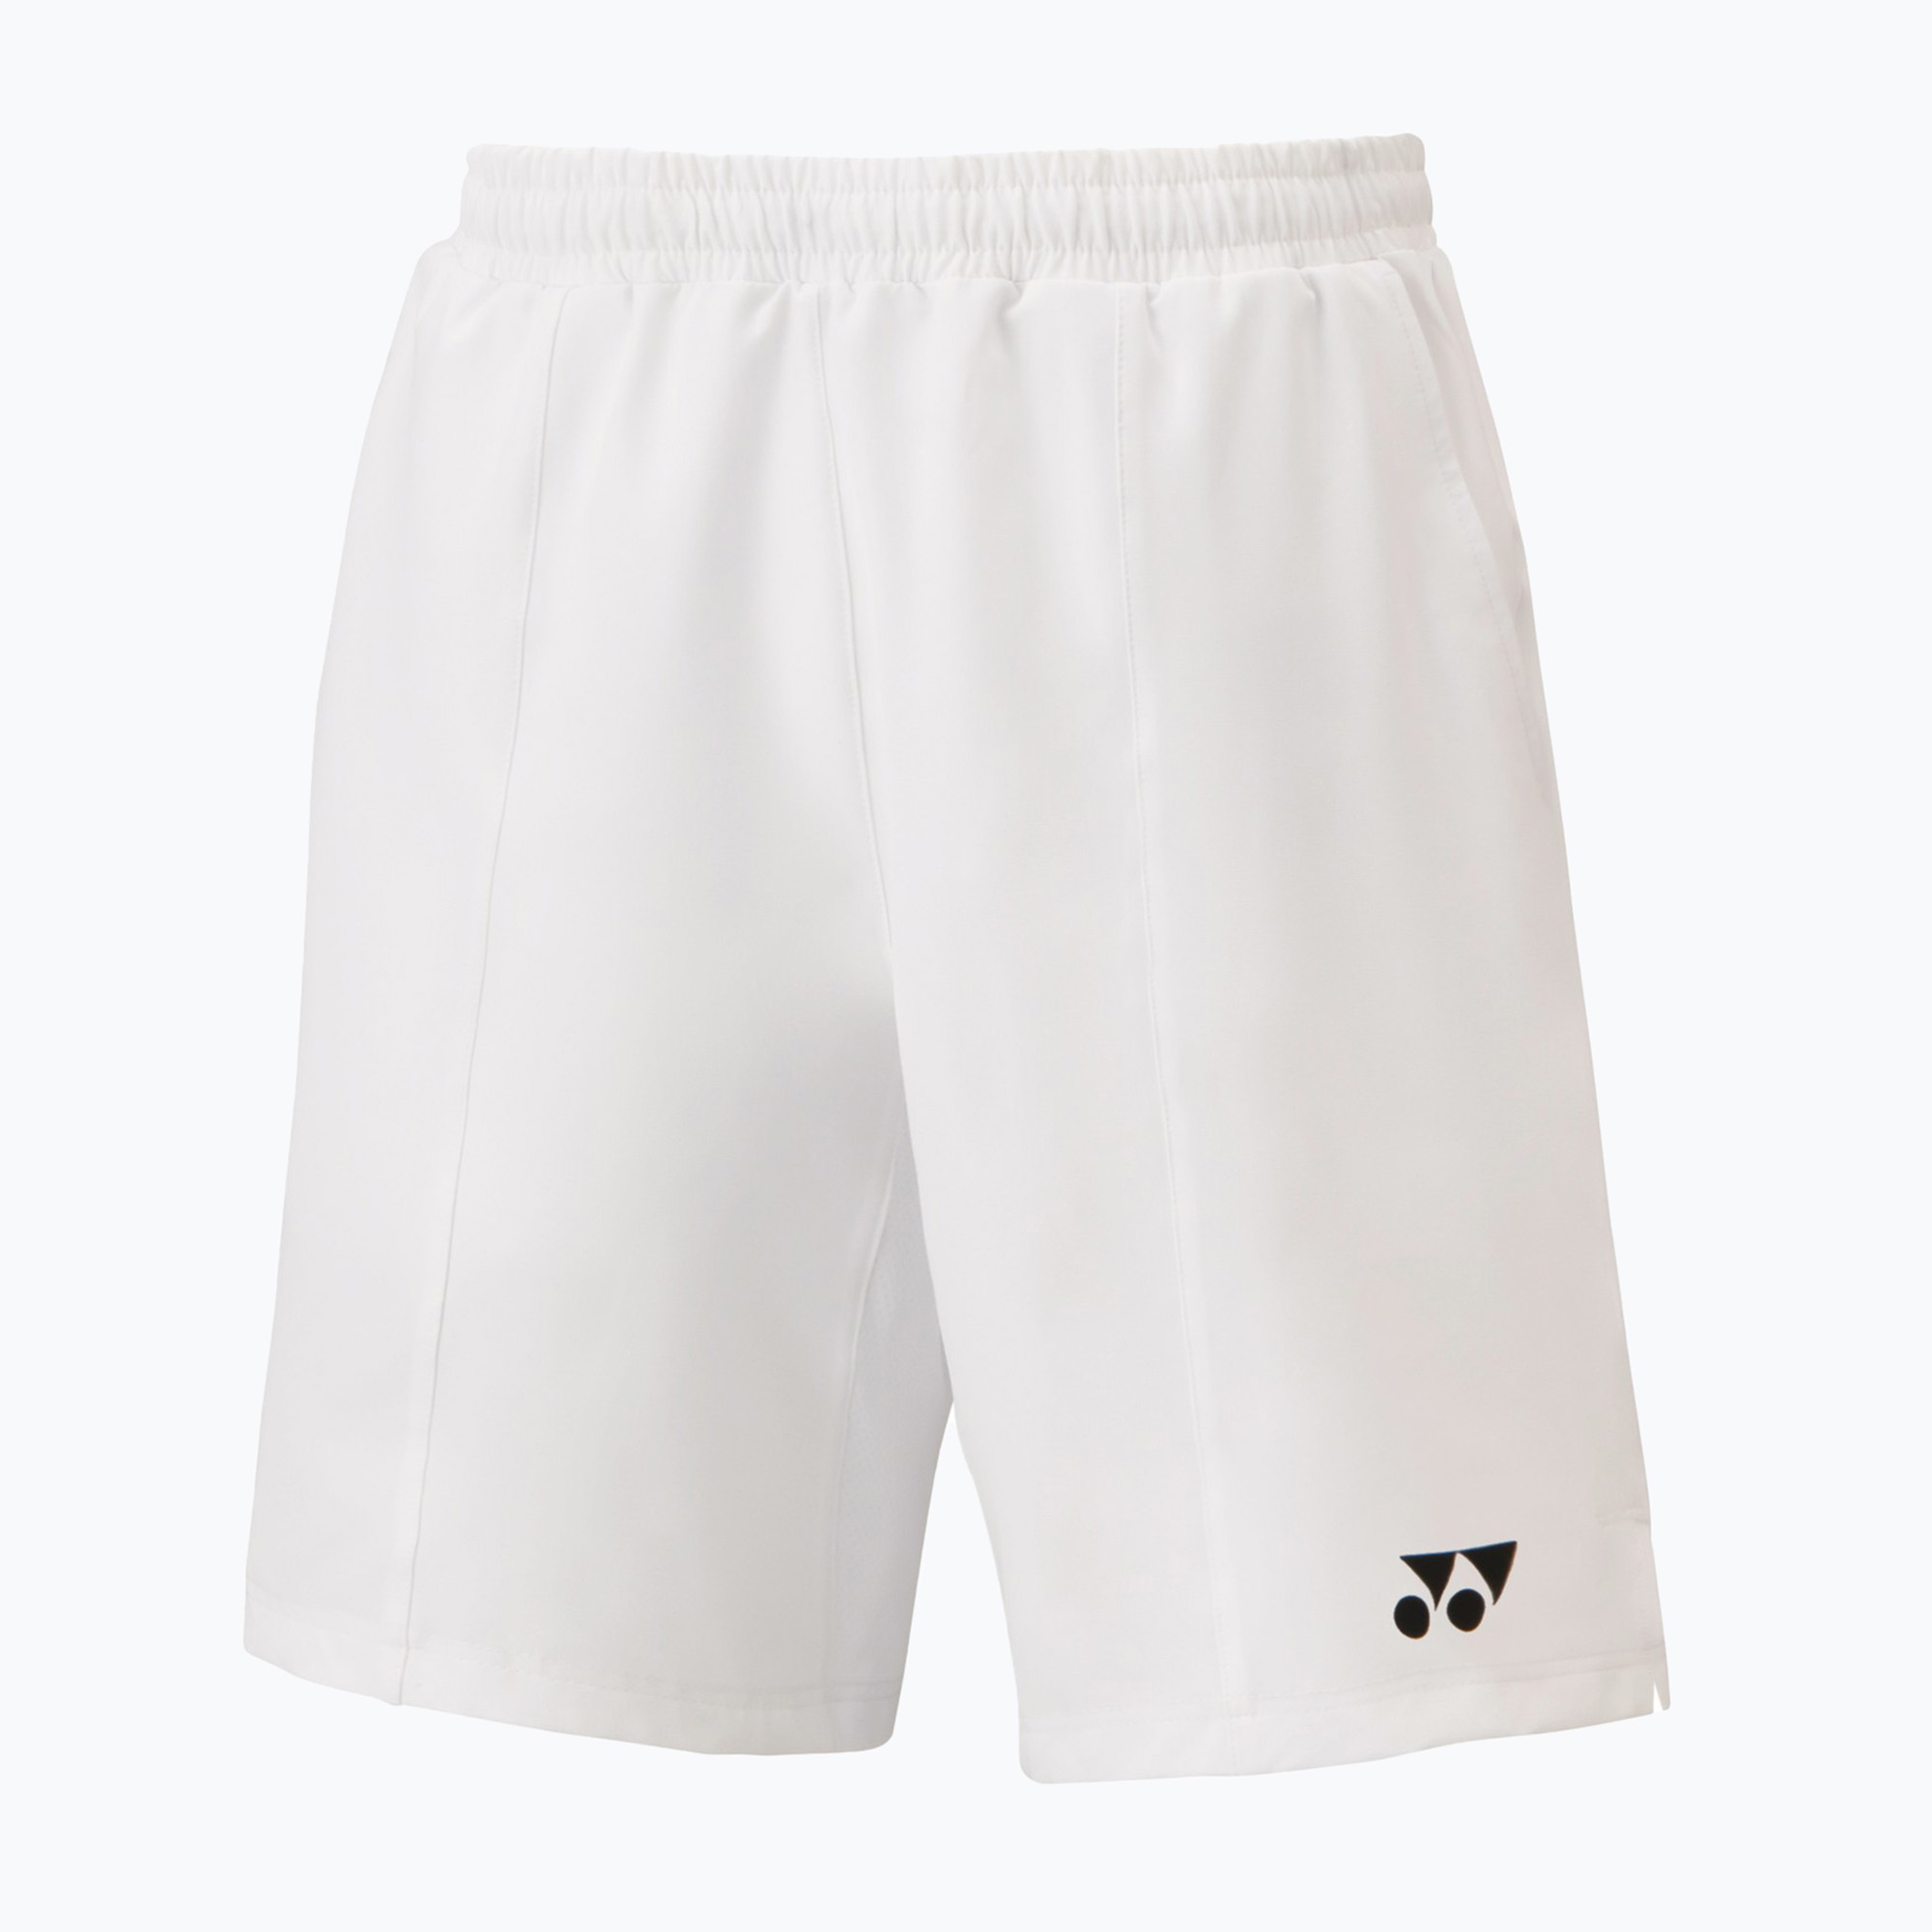 YONEX pánske tenisové šortky biele CSM151343W